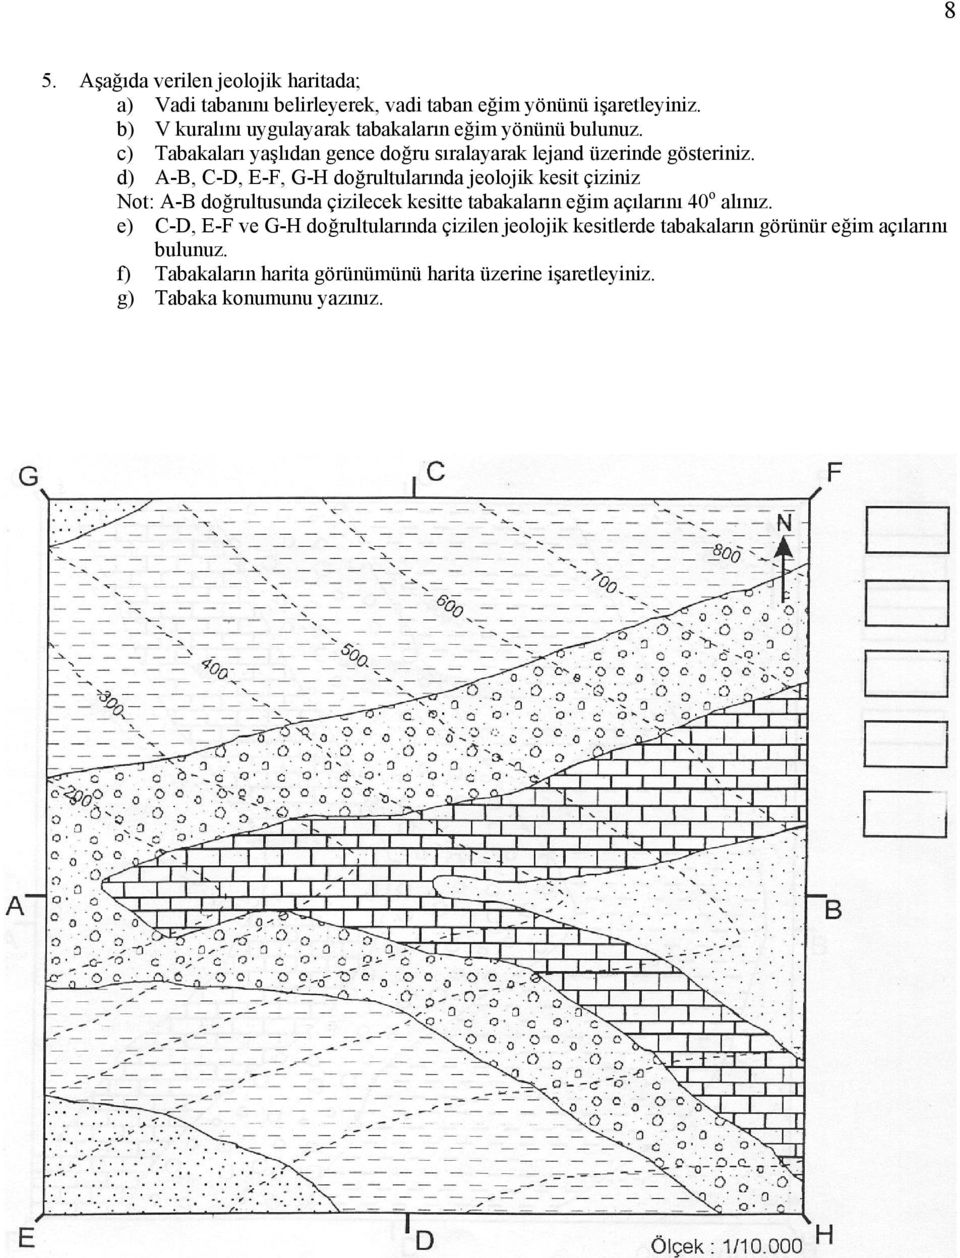 d) -, -, E-F, G-H doğrultularında jeolojik kesit çiziniz Not: - doğrultusunda çizilecek kesitte tabakaların eğim açılarını 40 o alınız.